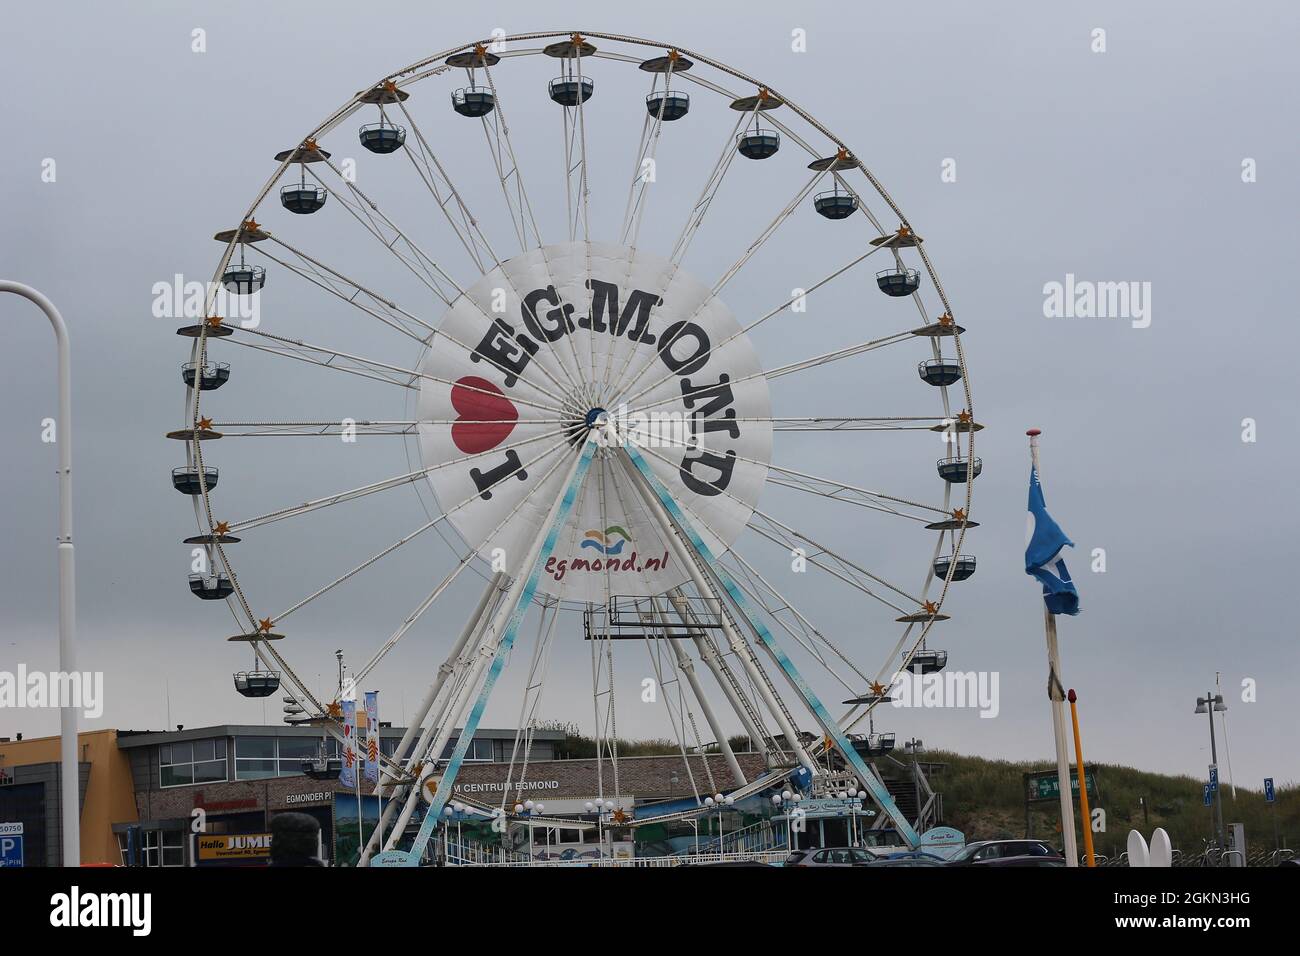 Ferris-rueda en la playa de Egmond-on-Zee, Noord-Holland, Países Bajos Foto de stock